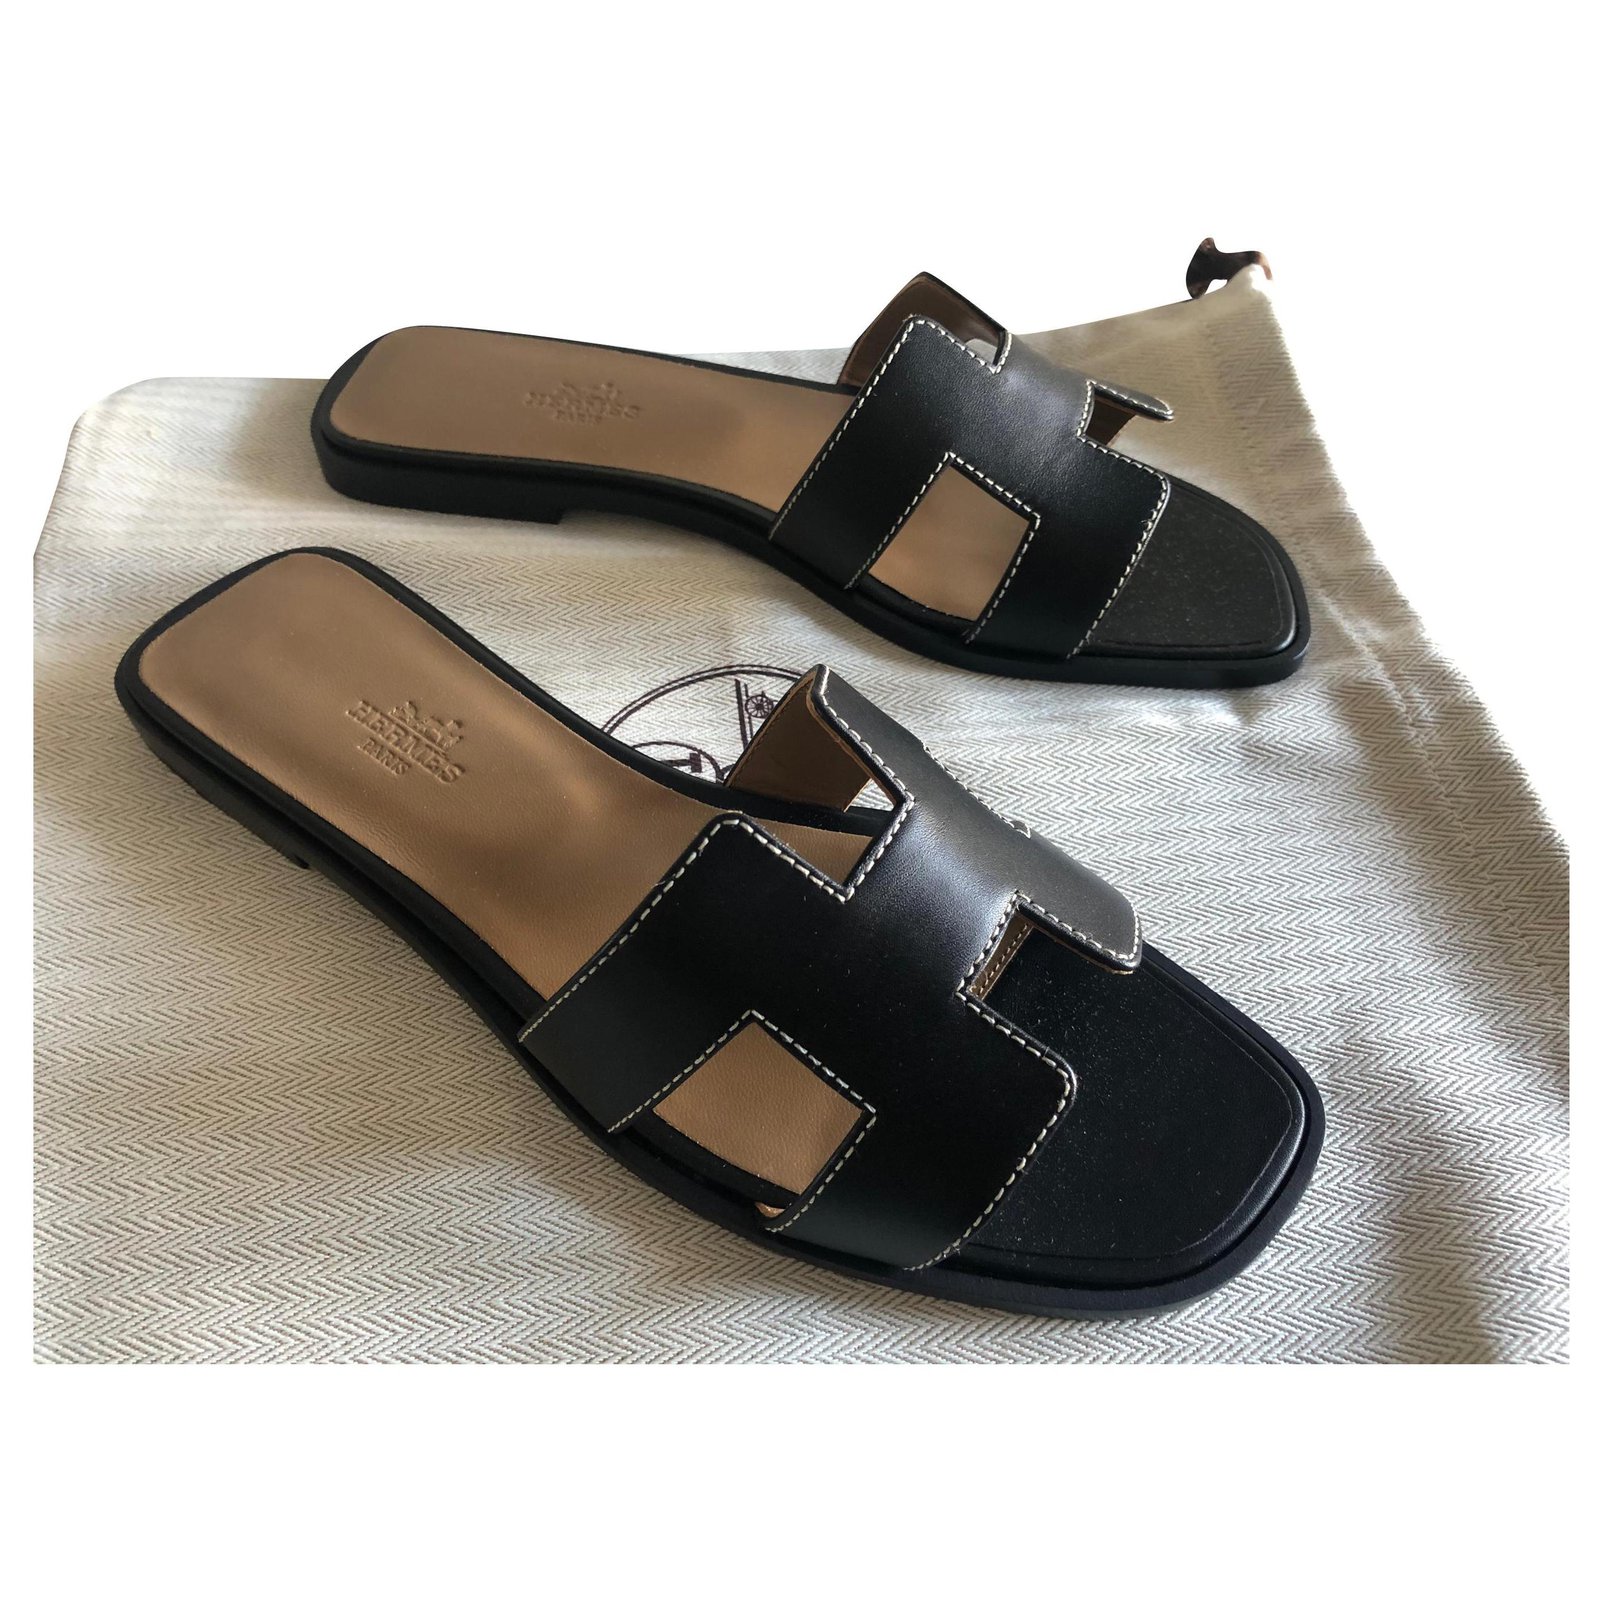 black hermes sandals